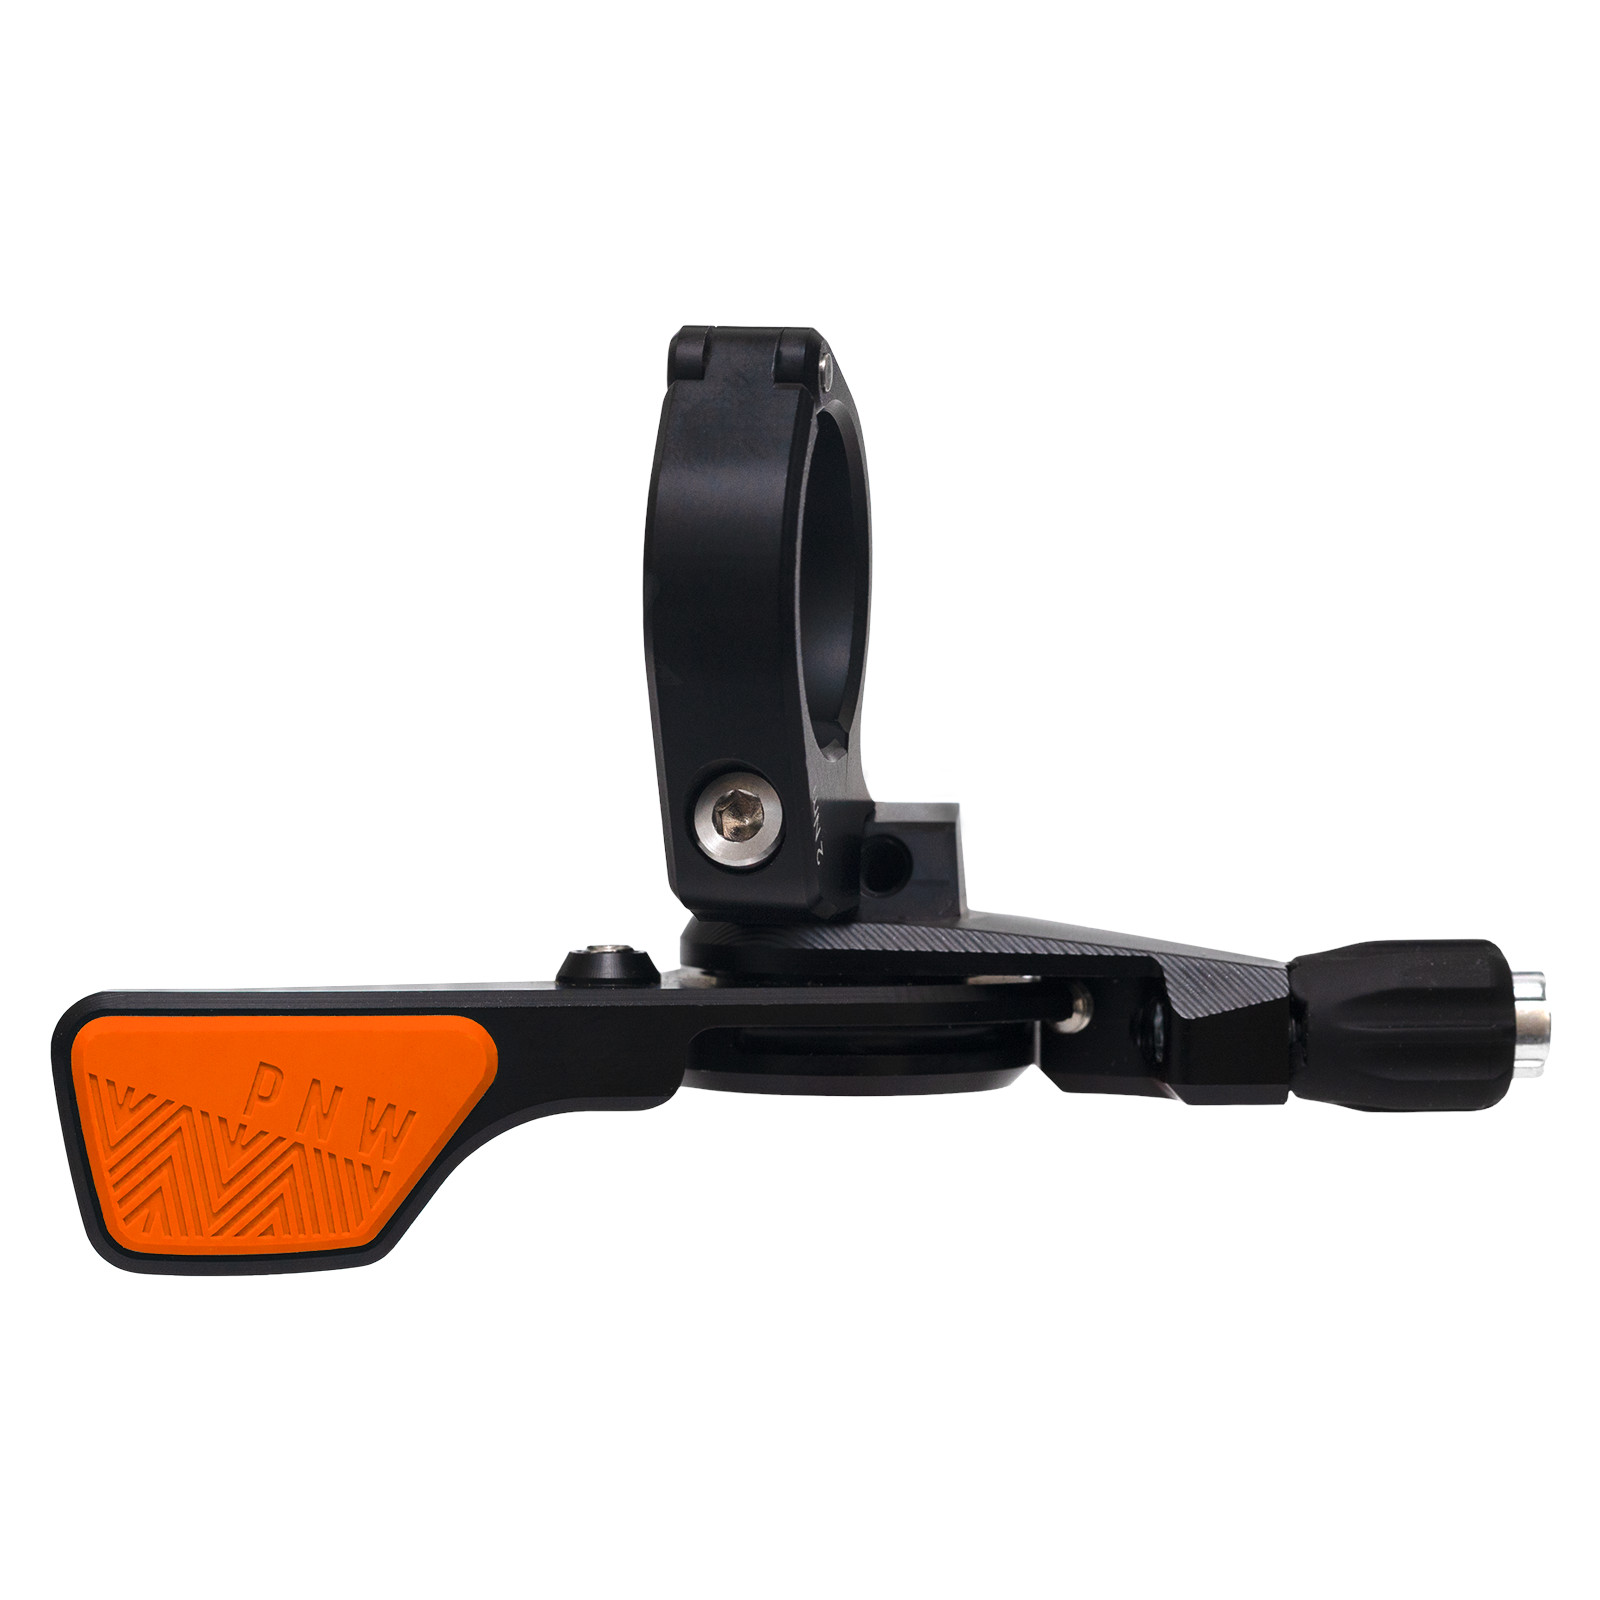 Produktbild von PNW Components Loam Fernbedienung für Teleskop-Sattelstütze | Klemme 22,2mm - schwarz/safety orange